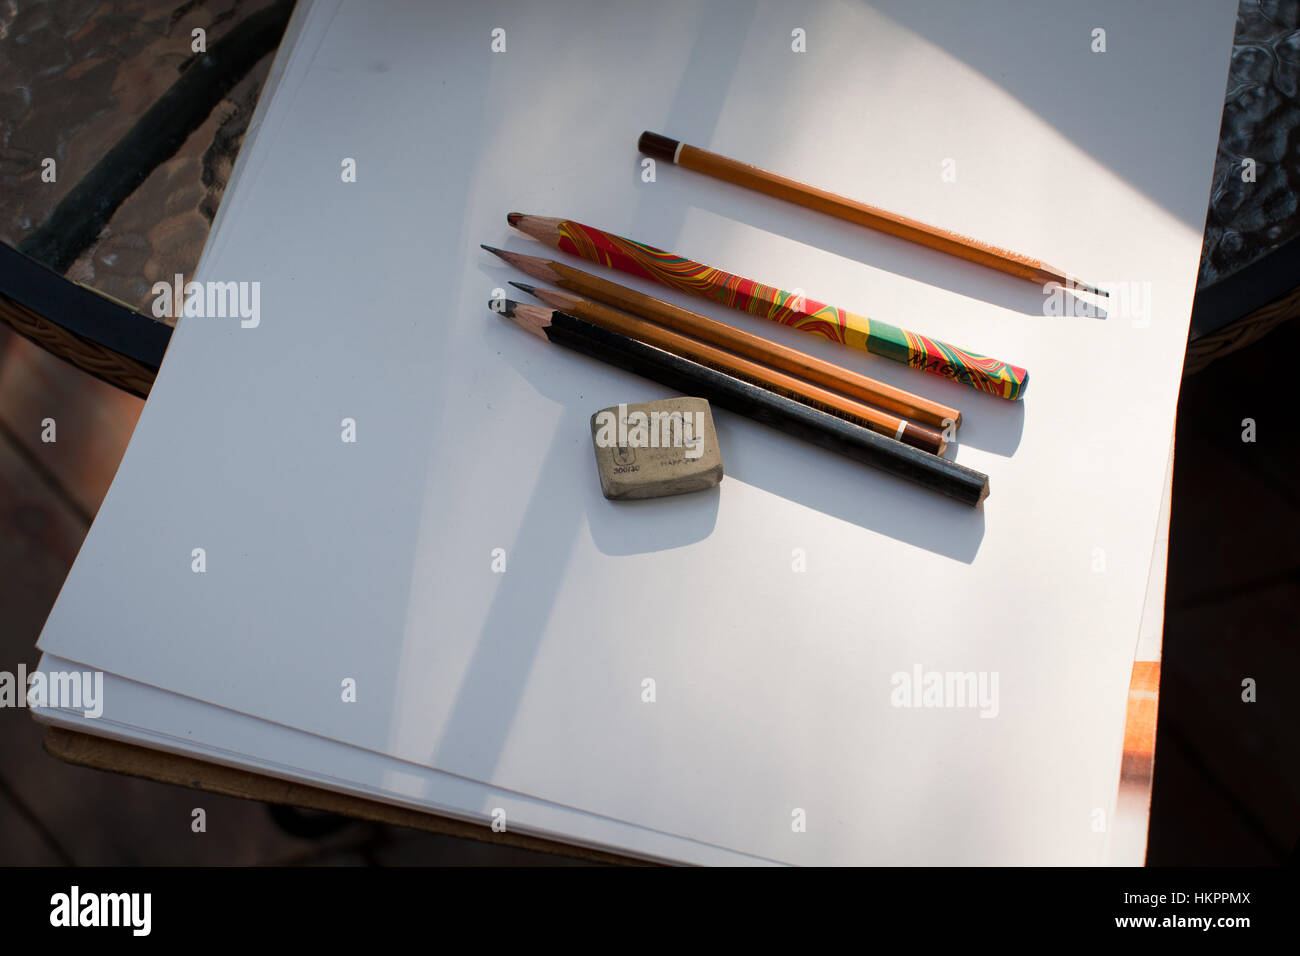 Les listes blanches de documents avec des crayons pour dessiner Banque D'Images